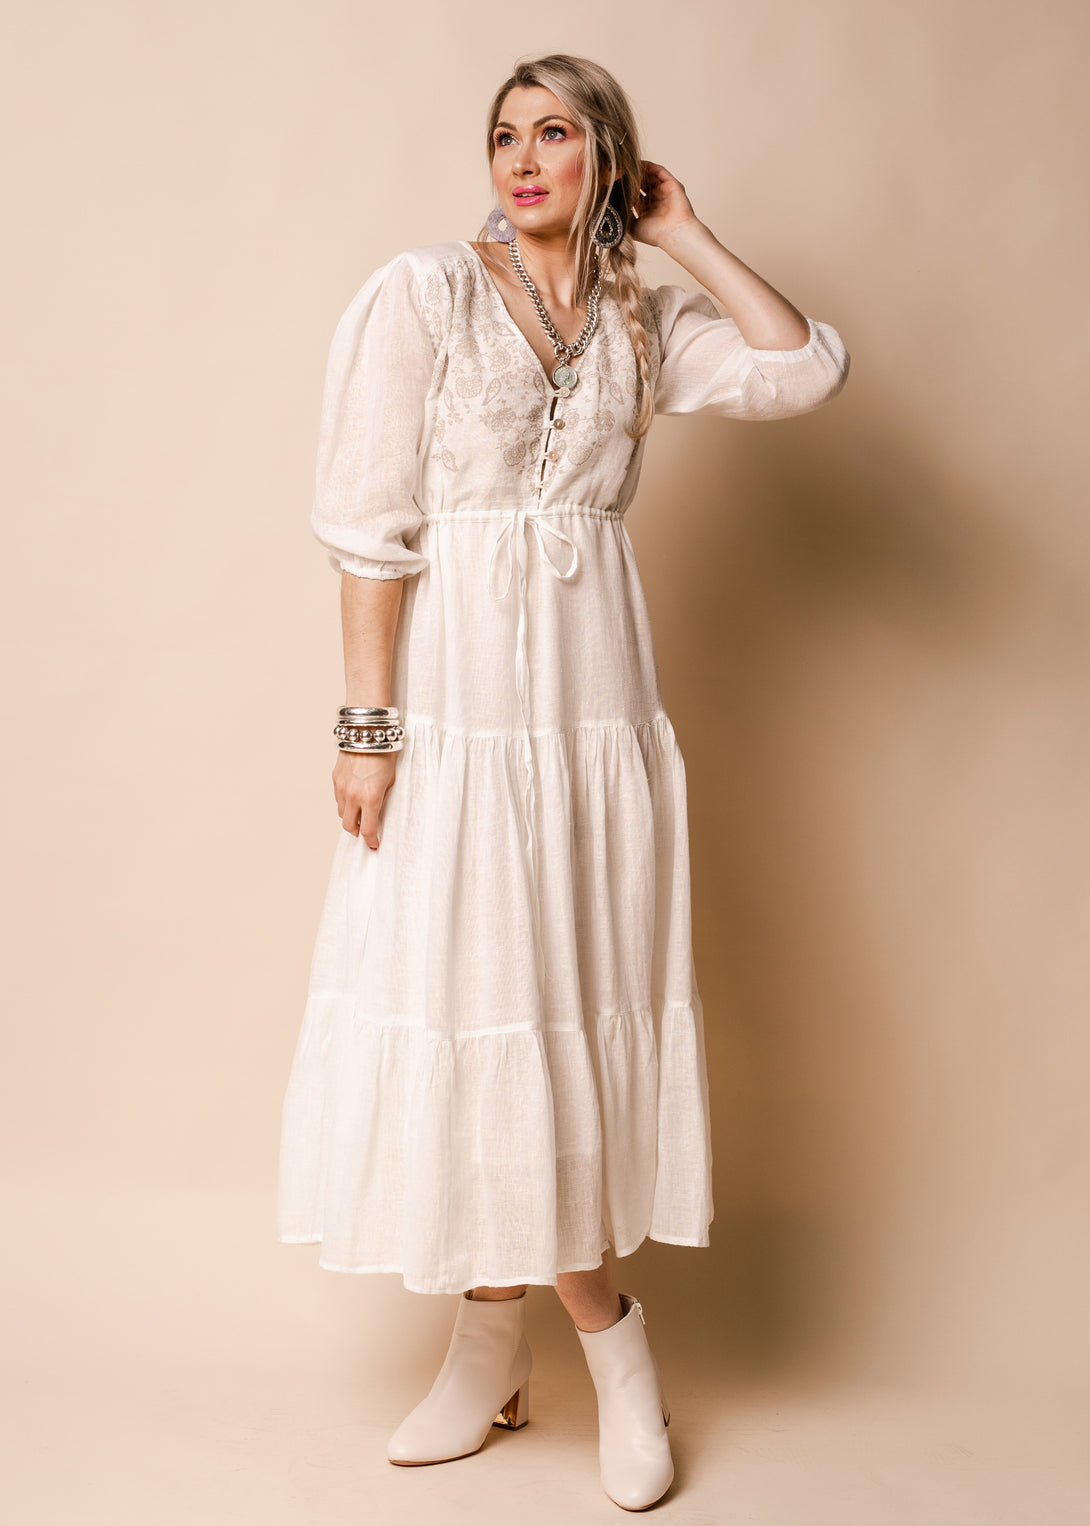 Danica Linen Dress in Cream - Imagine Fashion